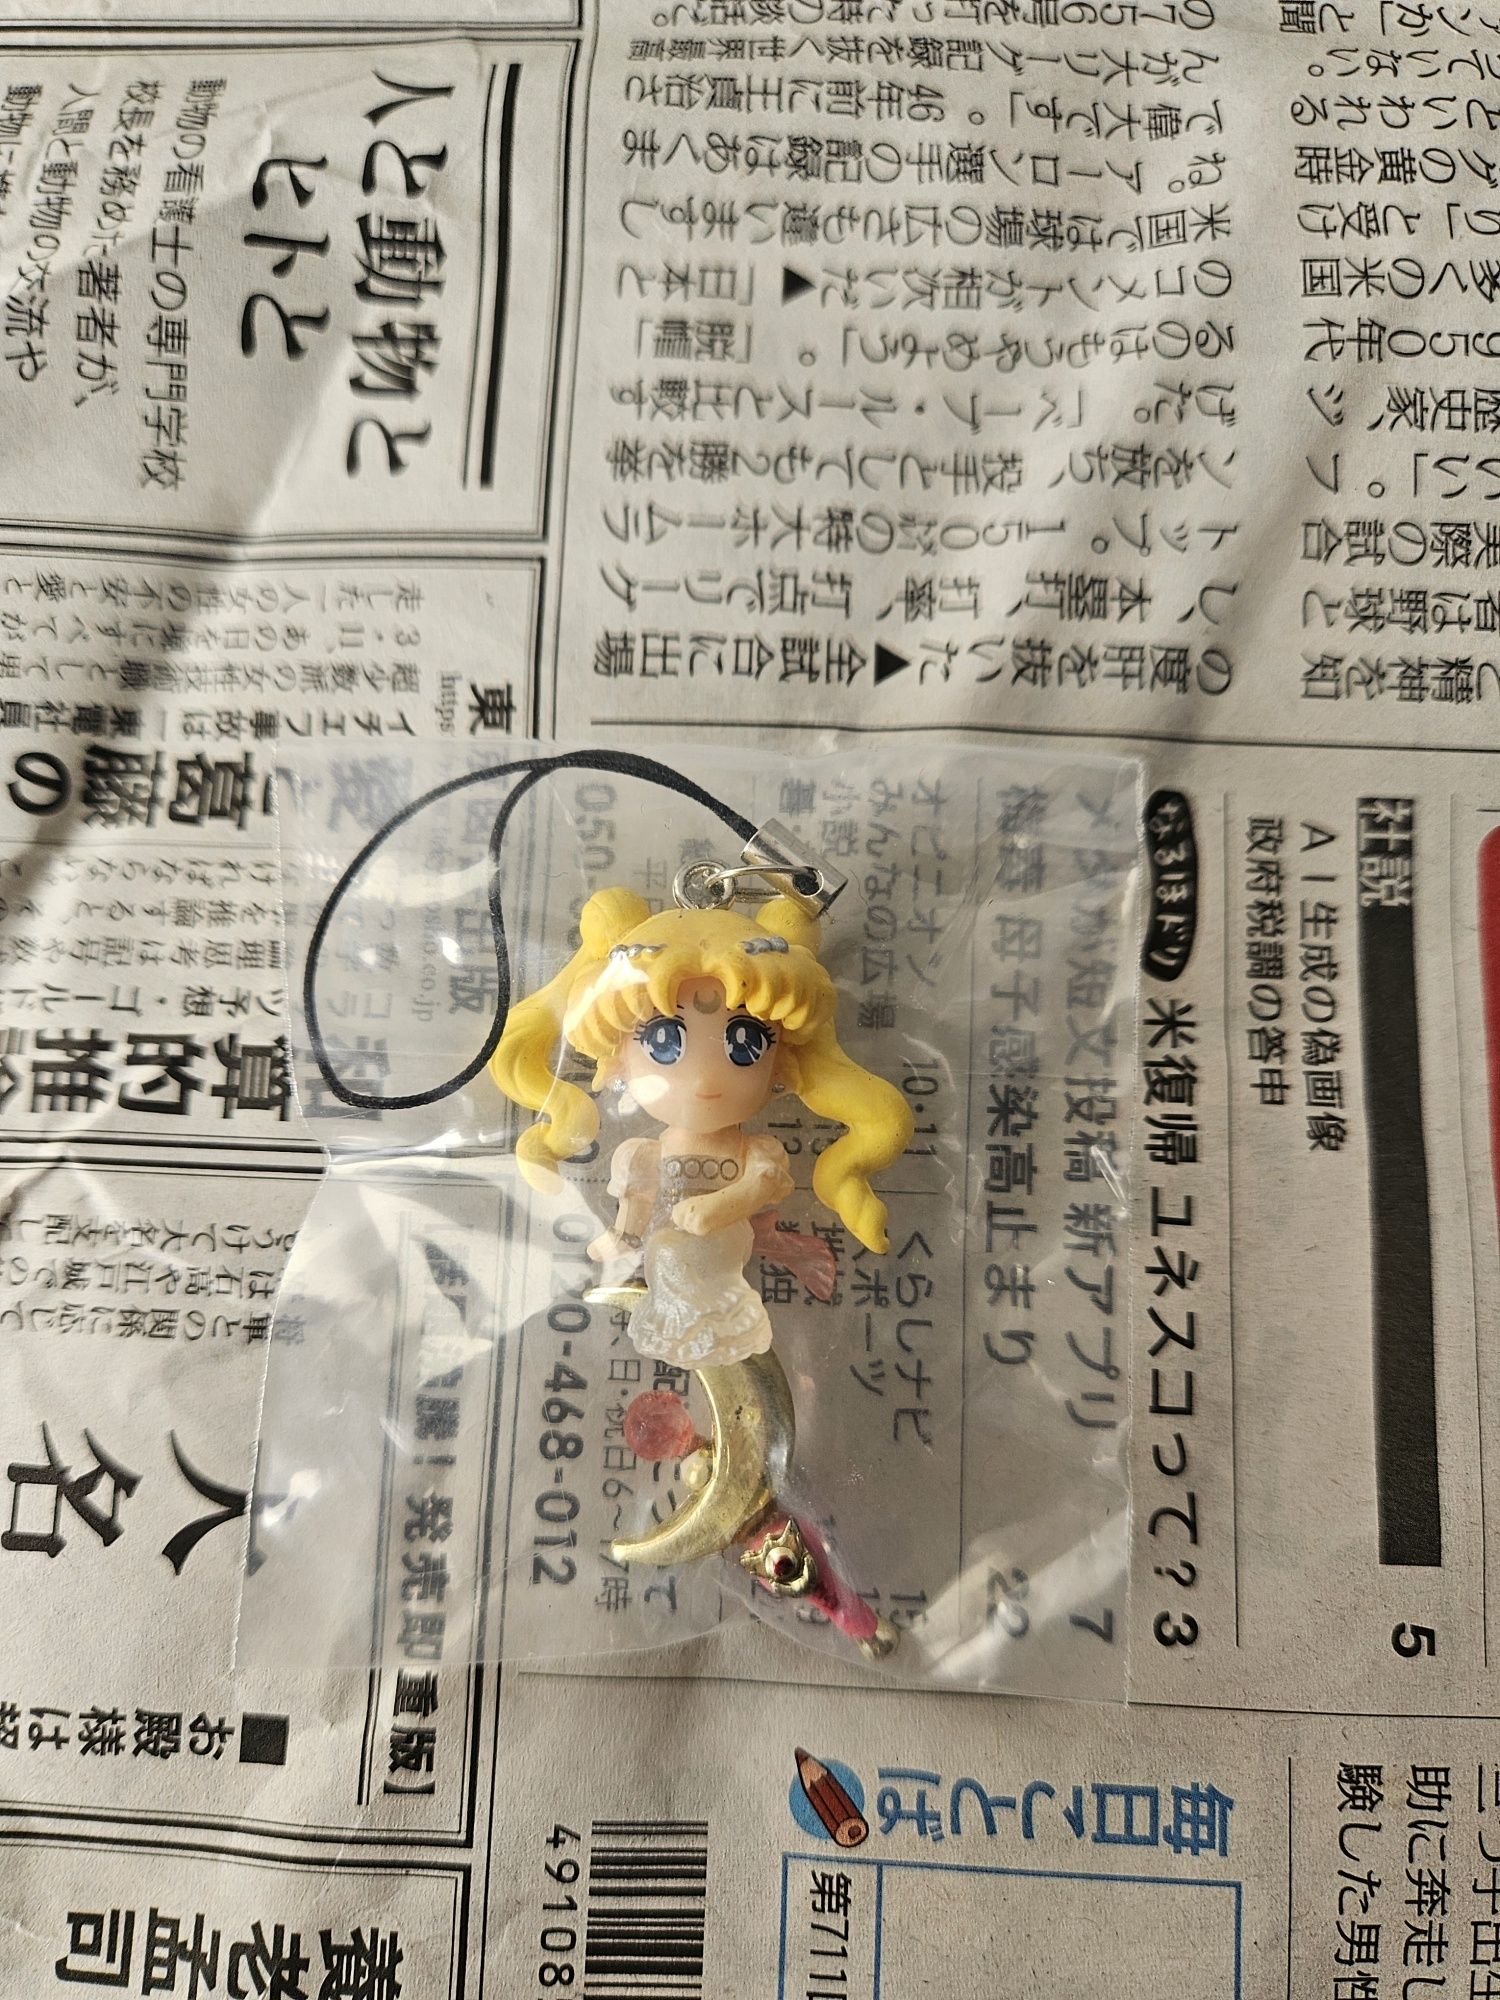 Sailor moon - várias figuras 5cm